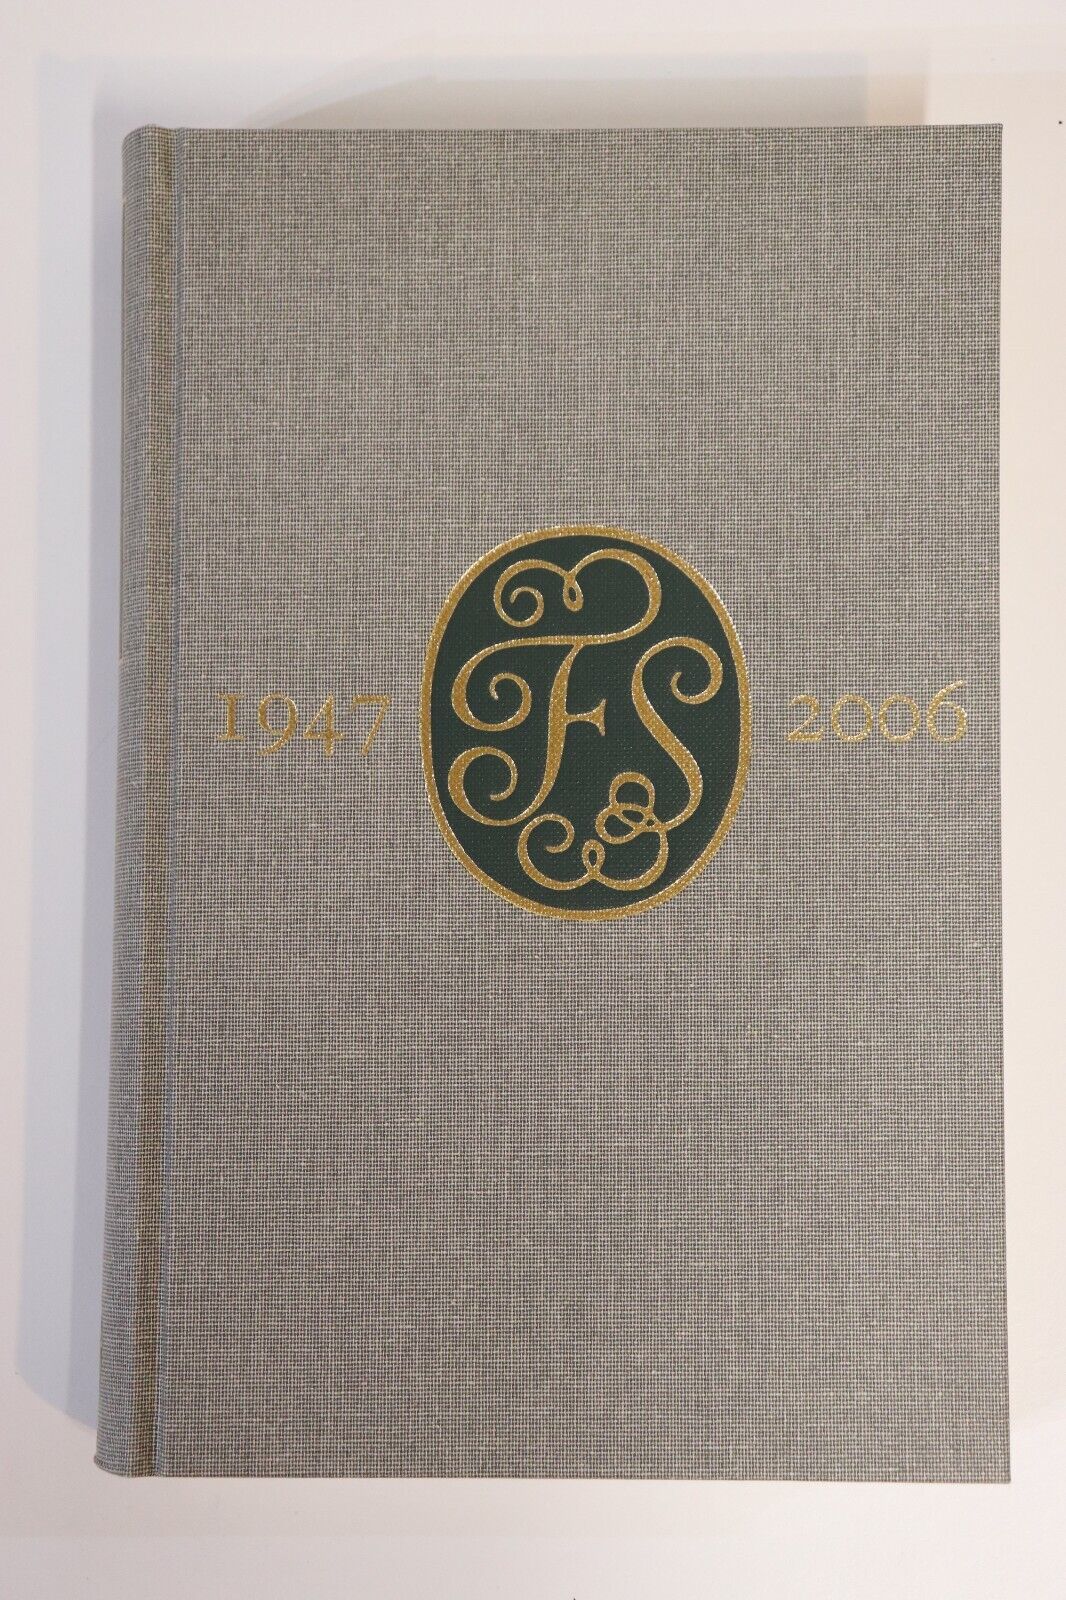 Folio 60: A Bibliography Of The Folio Society - 2007 - Literature Book